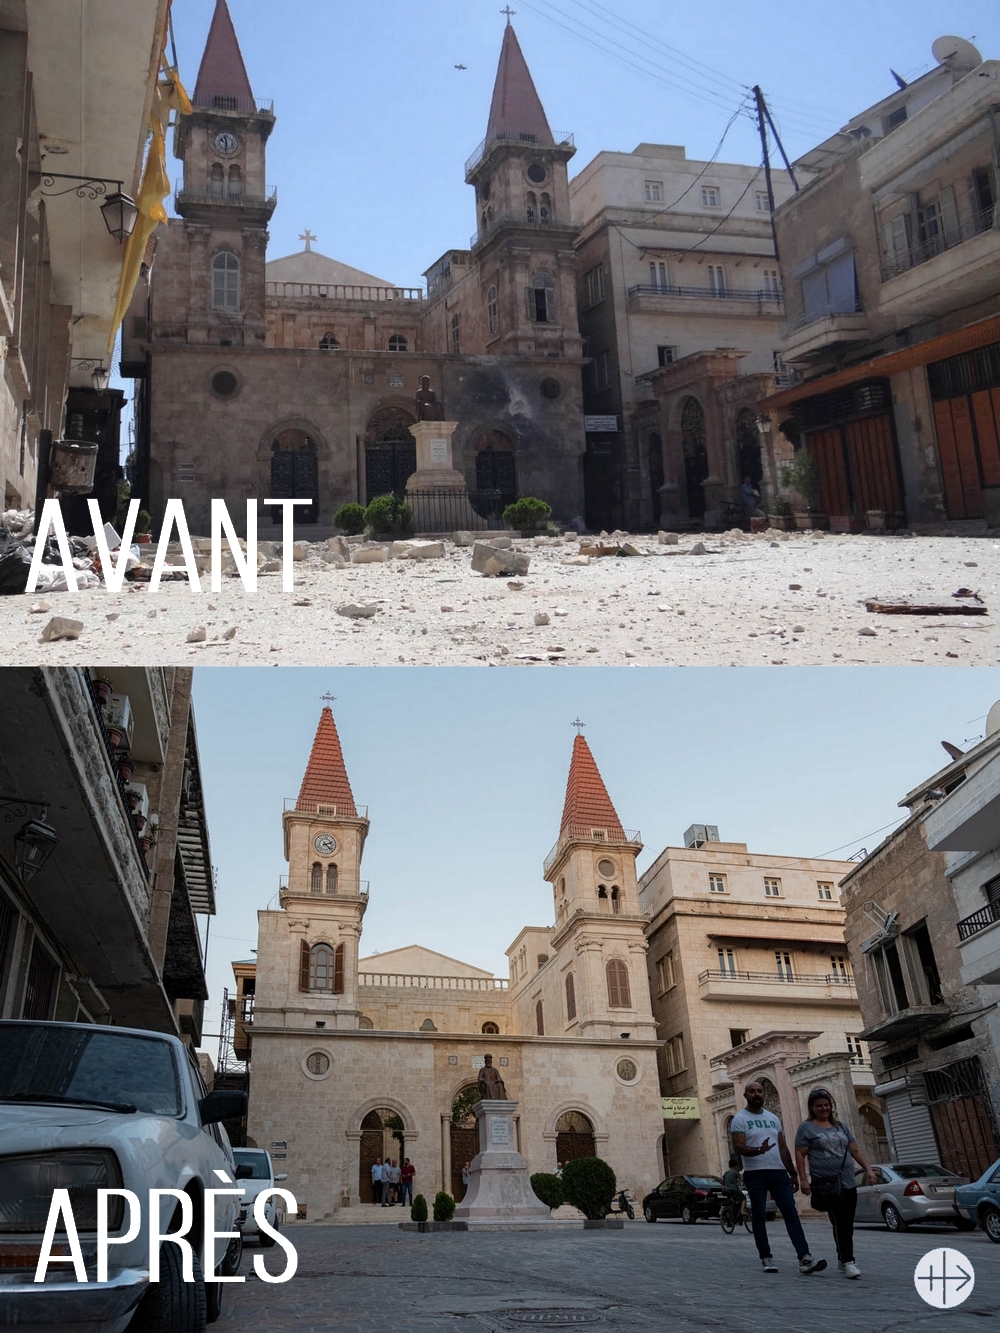 Syrie : le 20 juillet, la cathédrale Saint-Elie d’Alep renaîtra de ses cendres